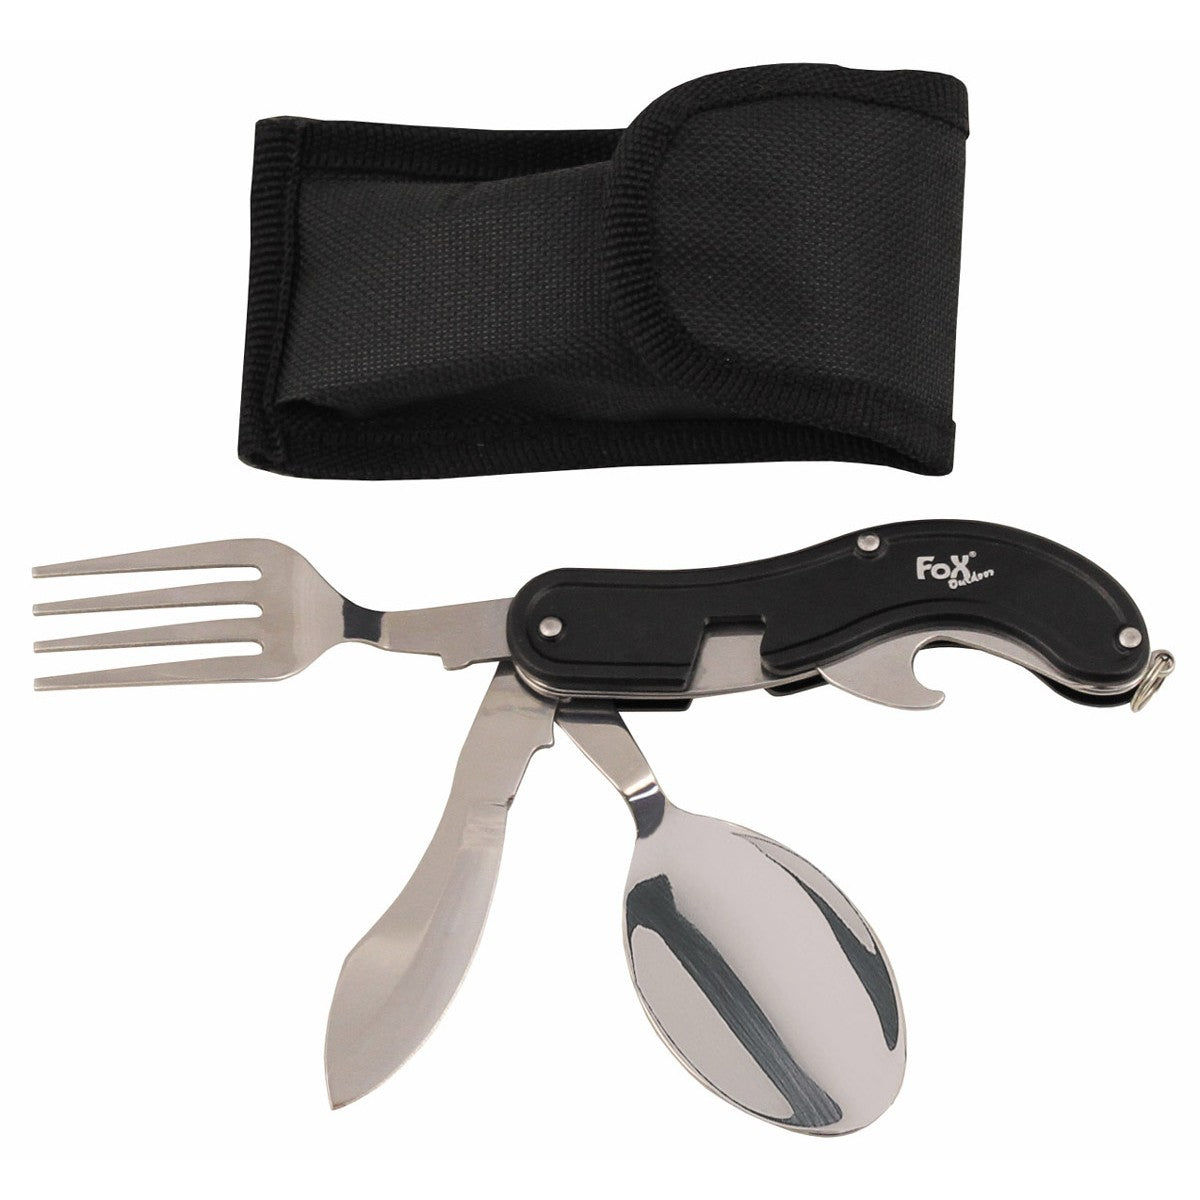 Kišeninio peilio stalo įrankiai 4 viename sukomplektuoti stalo įrankiai peilis šakutė šaukštas butelių atidarytuvas gali būti išardomas į 2 dalis, kad būtų galima naudoti